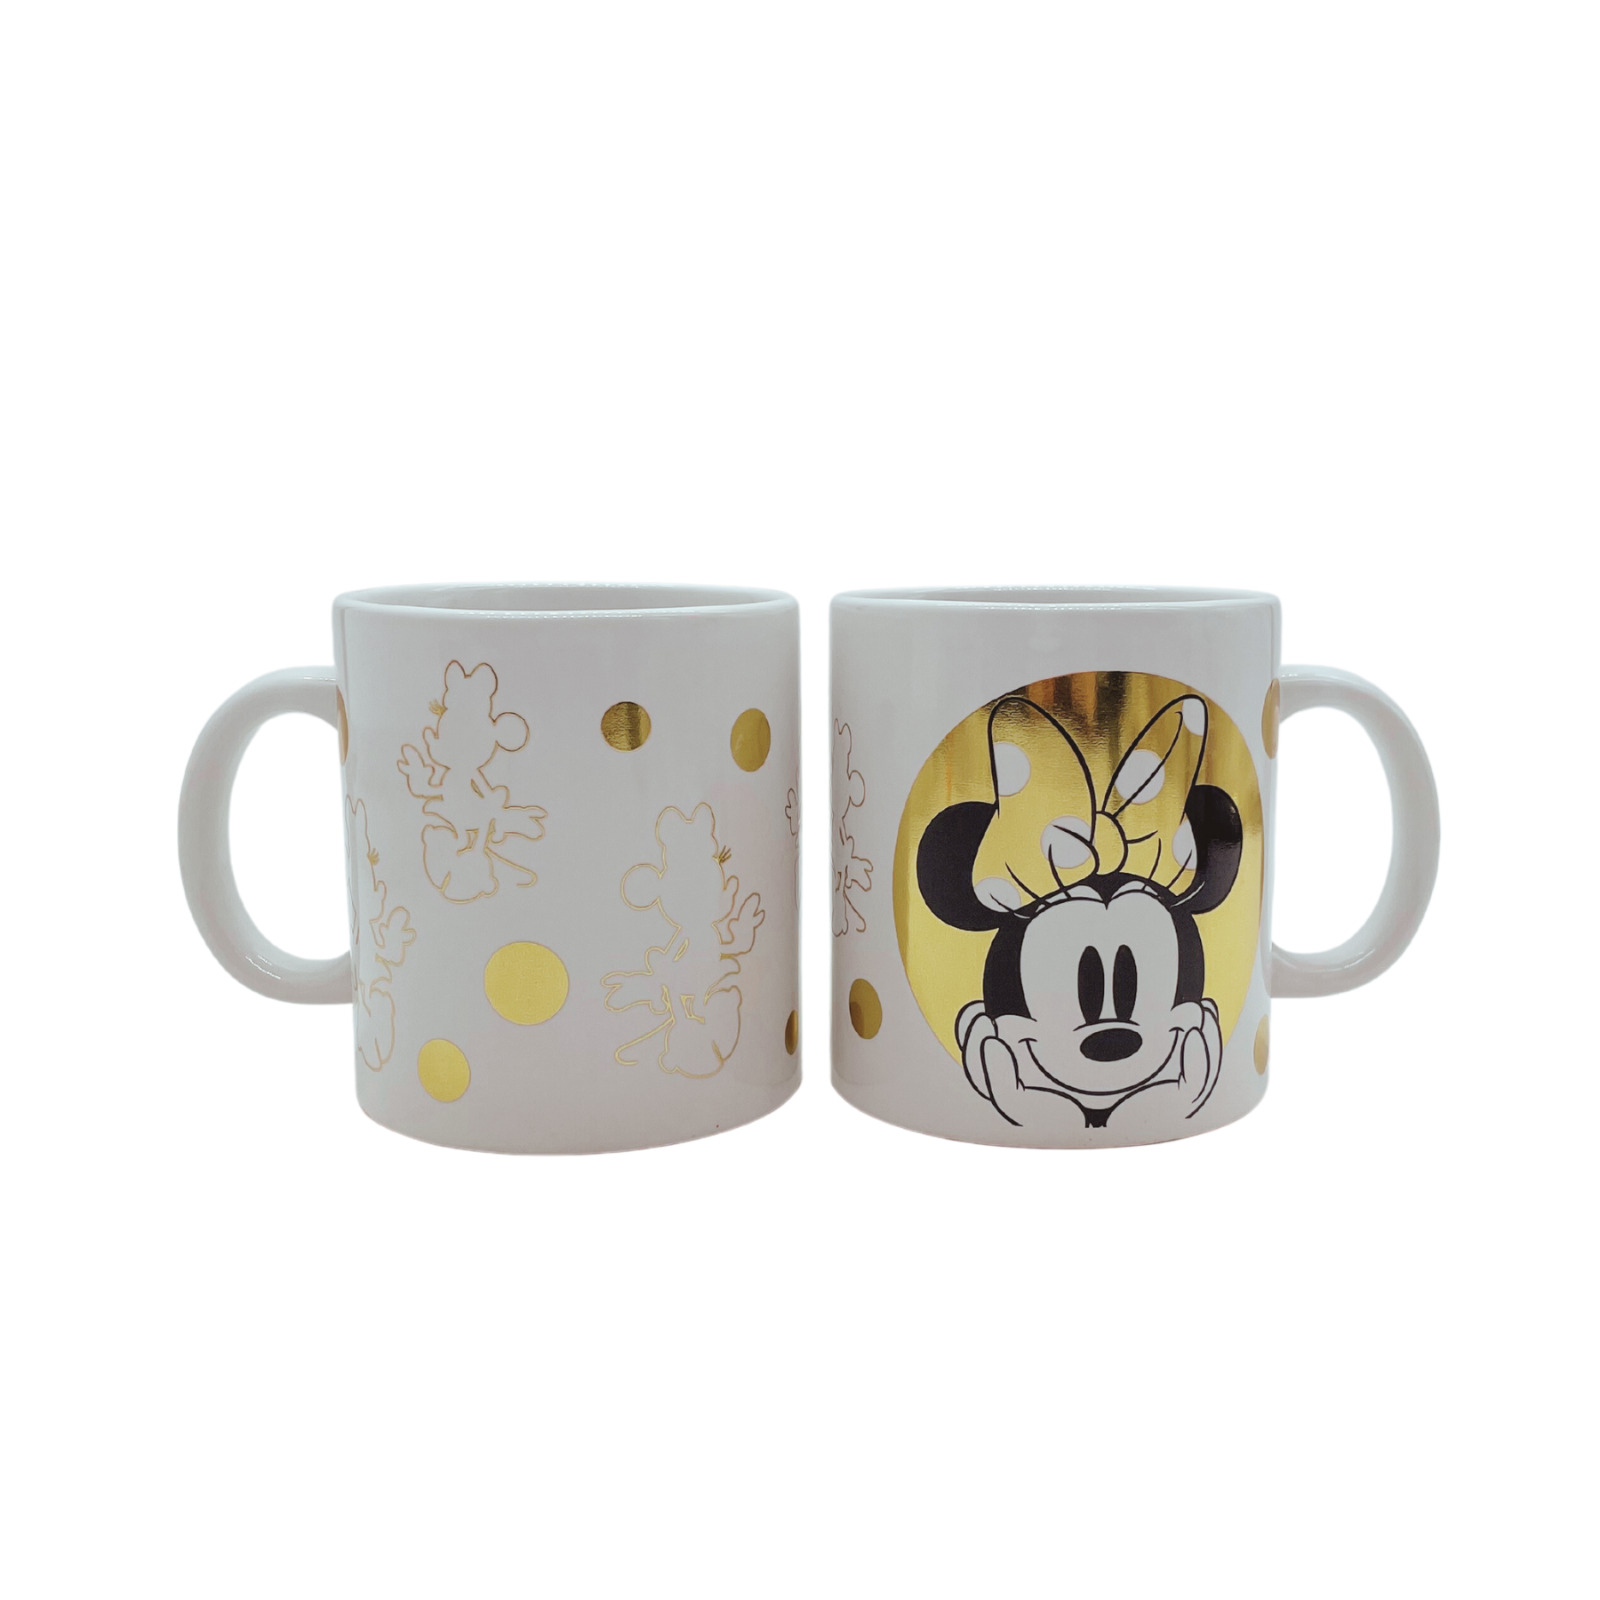 Minnie Mouse Large Coffee Mug, Set of 2, 16 oz